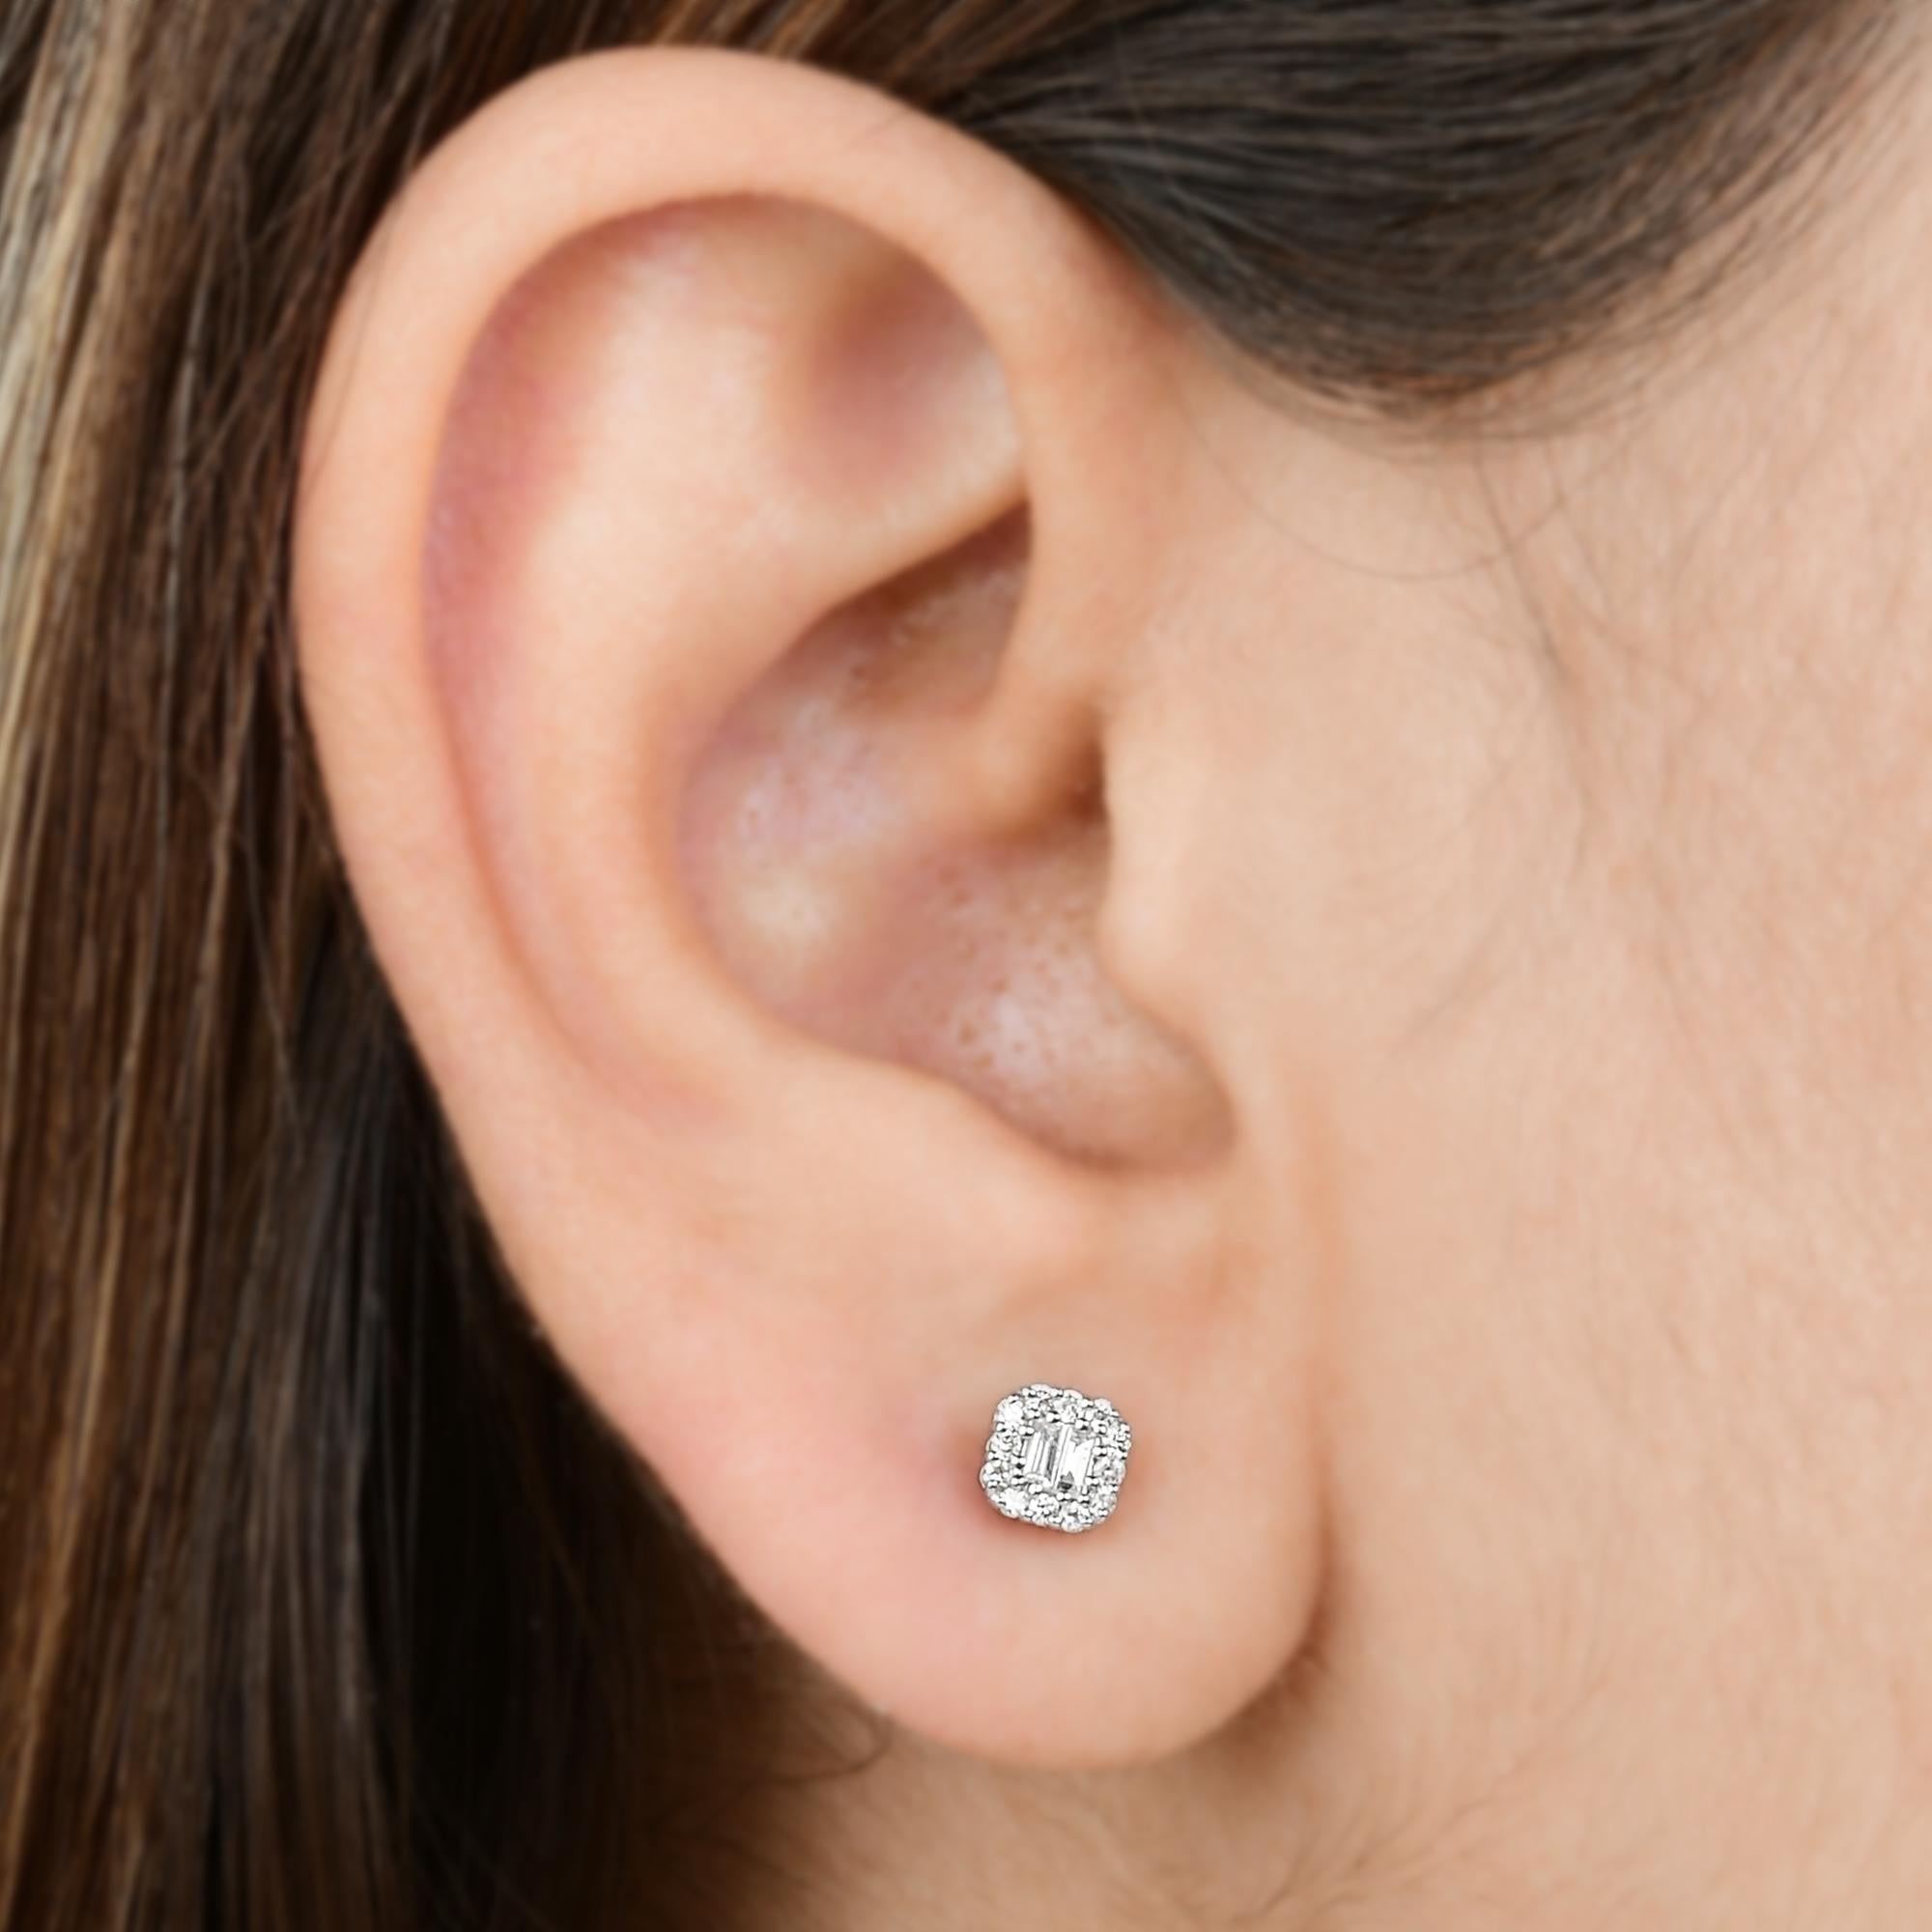 how big is 6 mm earrings